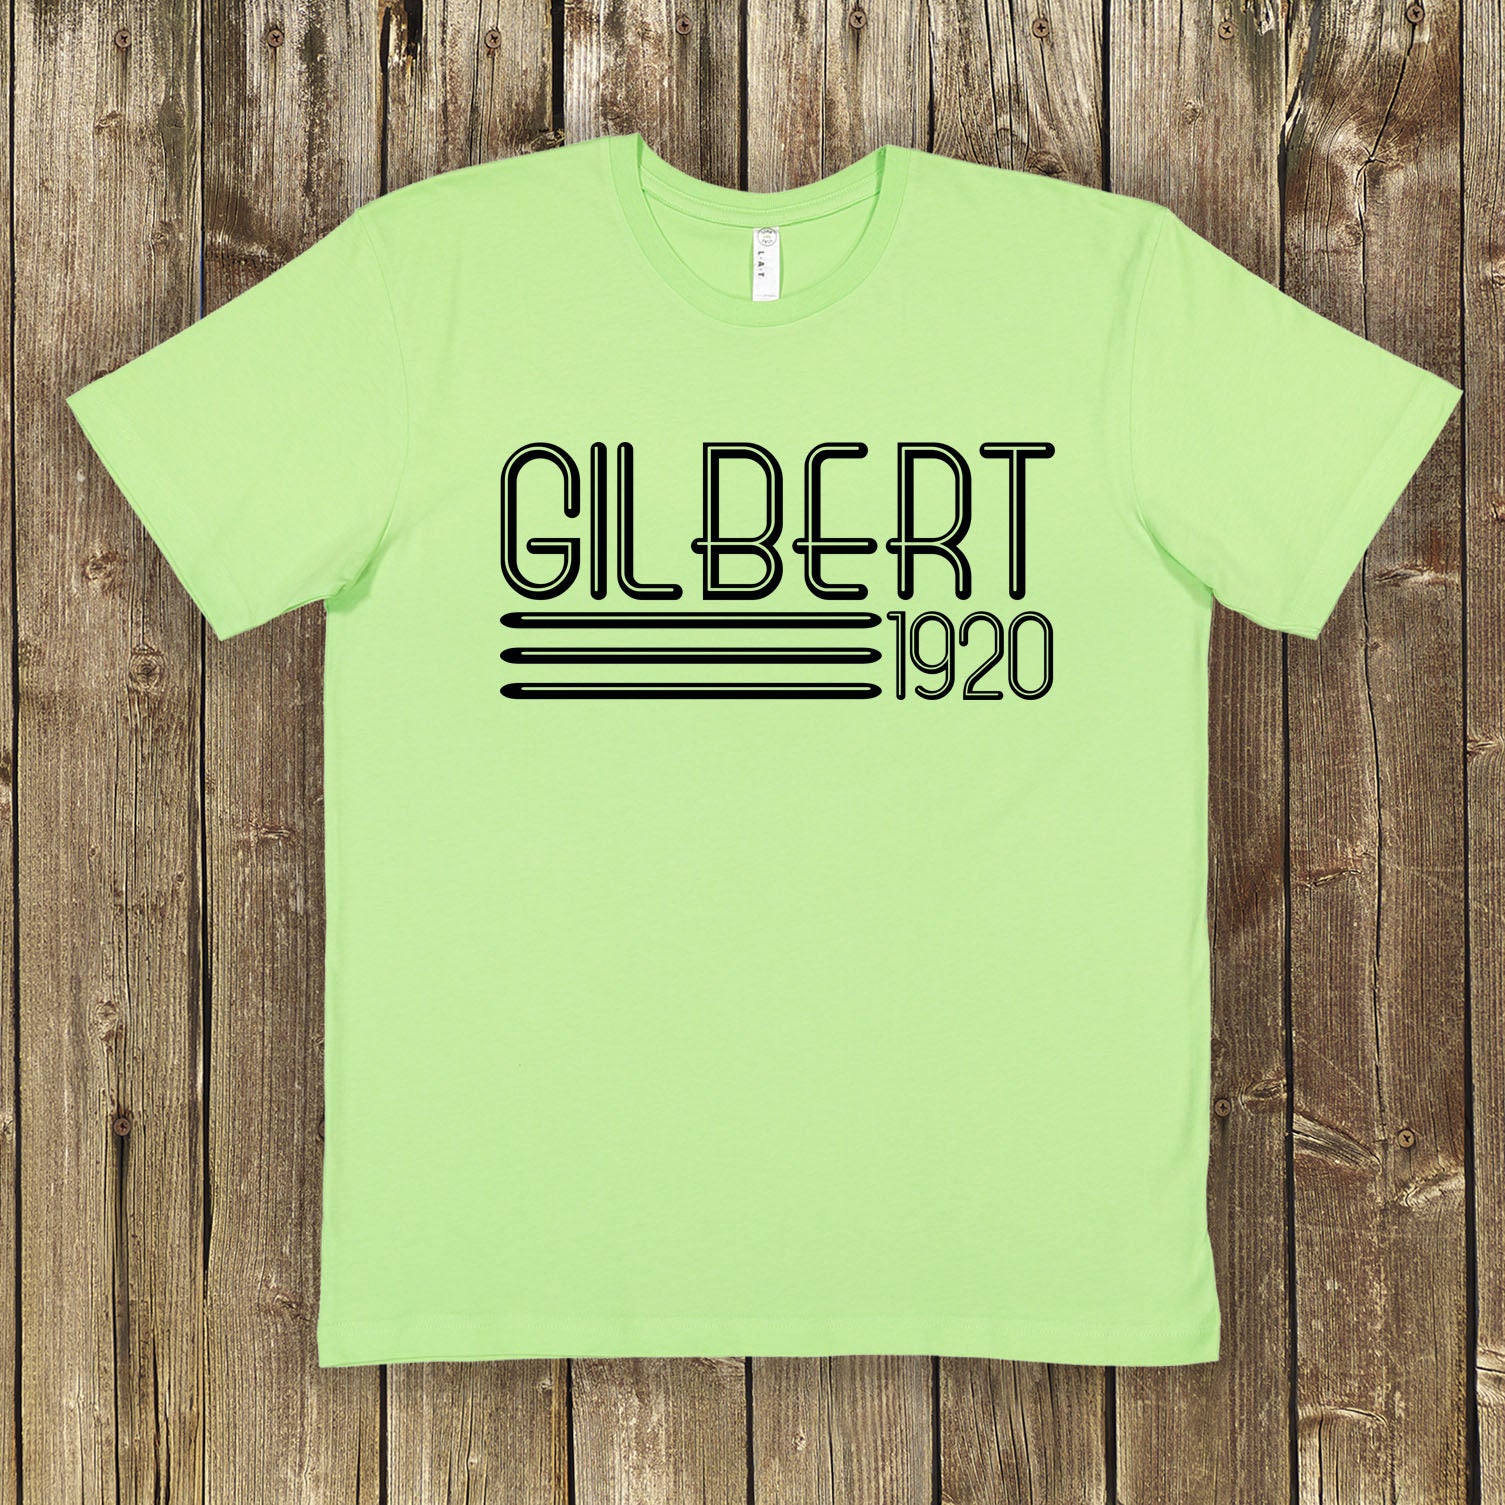 Gilbert 1920 Shirt